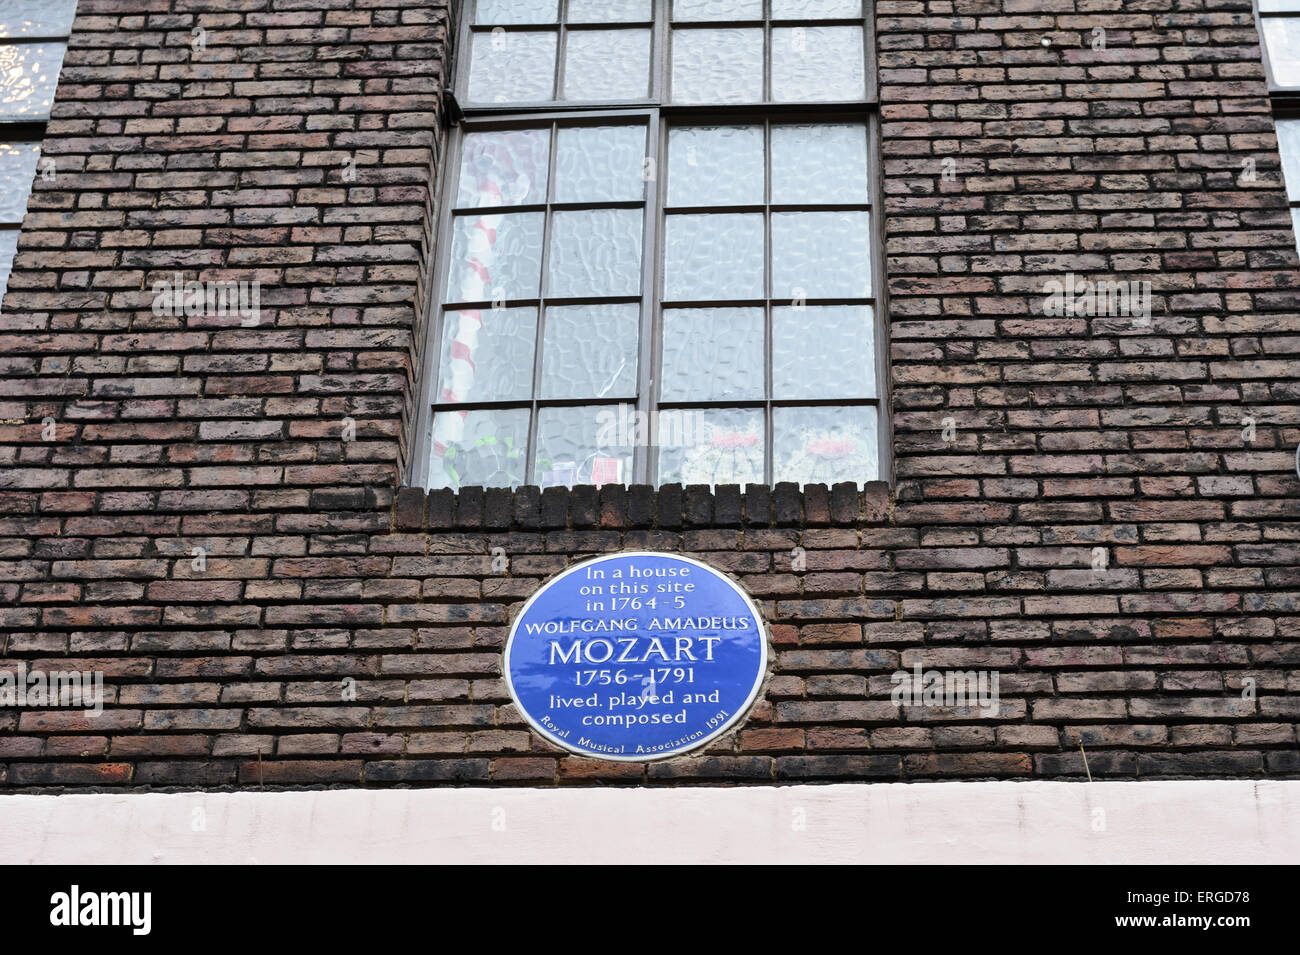 Une peste commémorative bleu de Wolfgang Amadeus Mozart (1756 - 1791) à l'extérieur d'une maison qu'il a vécu en 1764, Londres. Banque D'Images